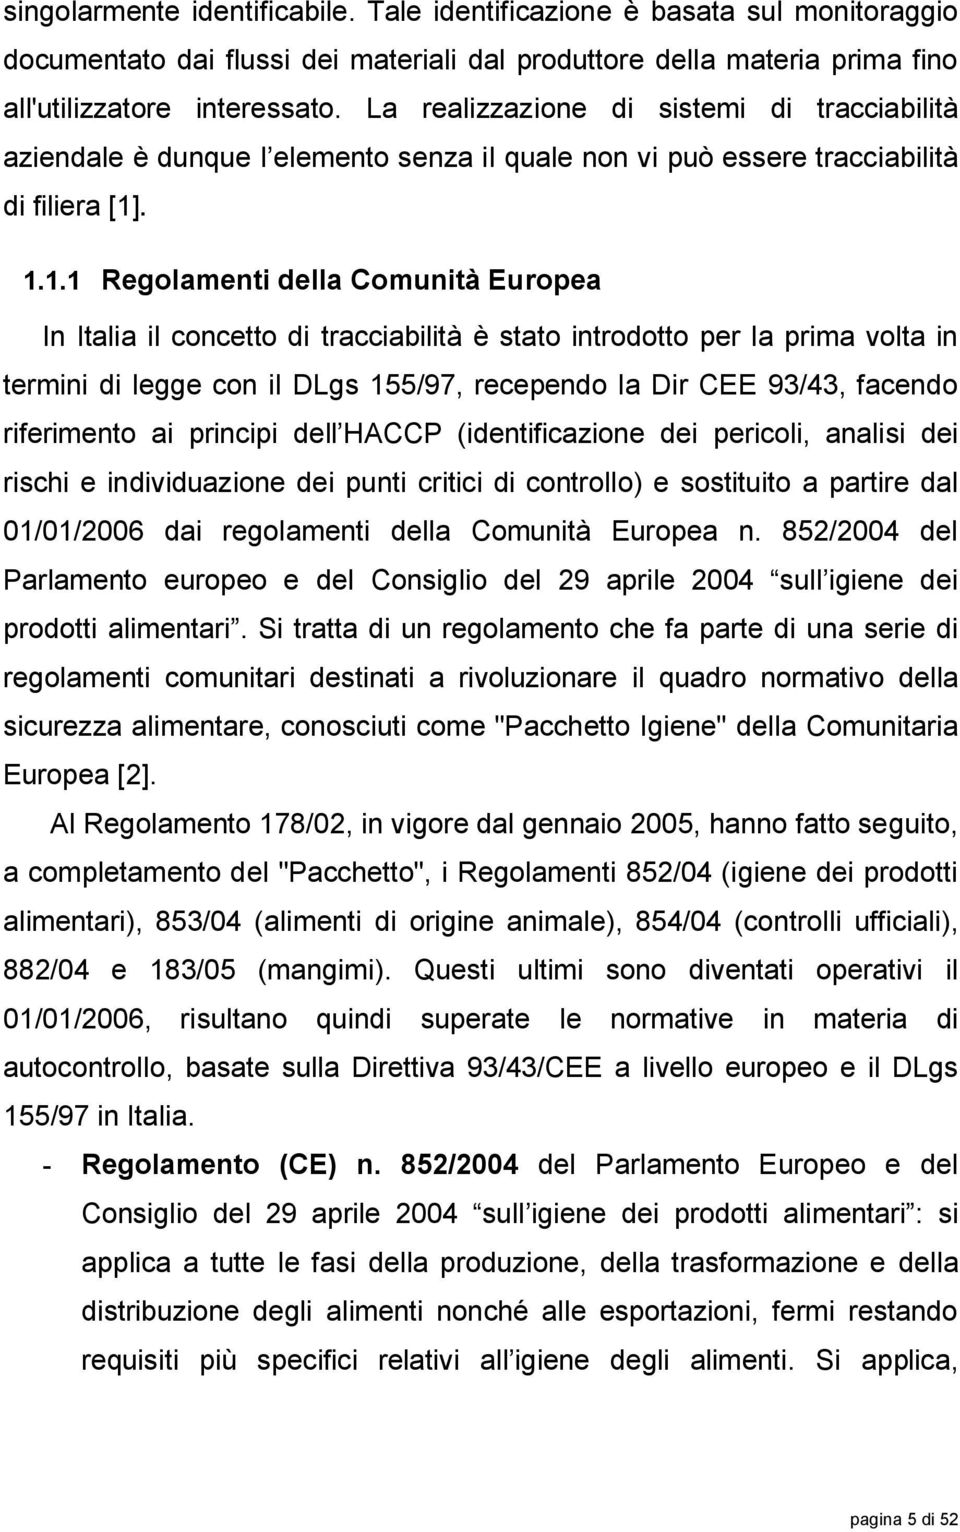 . 1.1.1 Regolamenti della Comunità Europea In Italia il concetto di tracciabilità è stato introdotto per la prima volta in termini di legge con il DLgs 155/97, recependo la Dir CEE 93/43, facendo